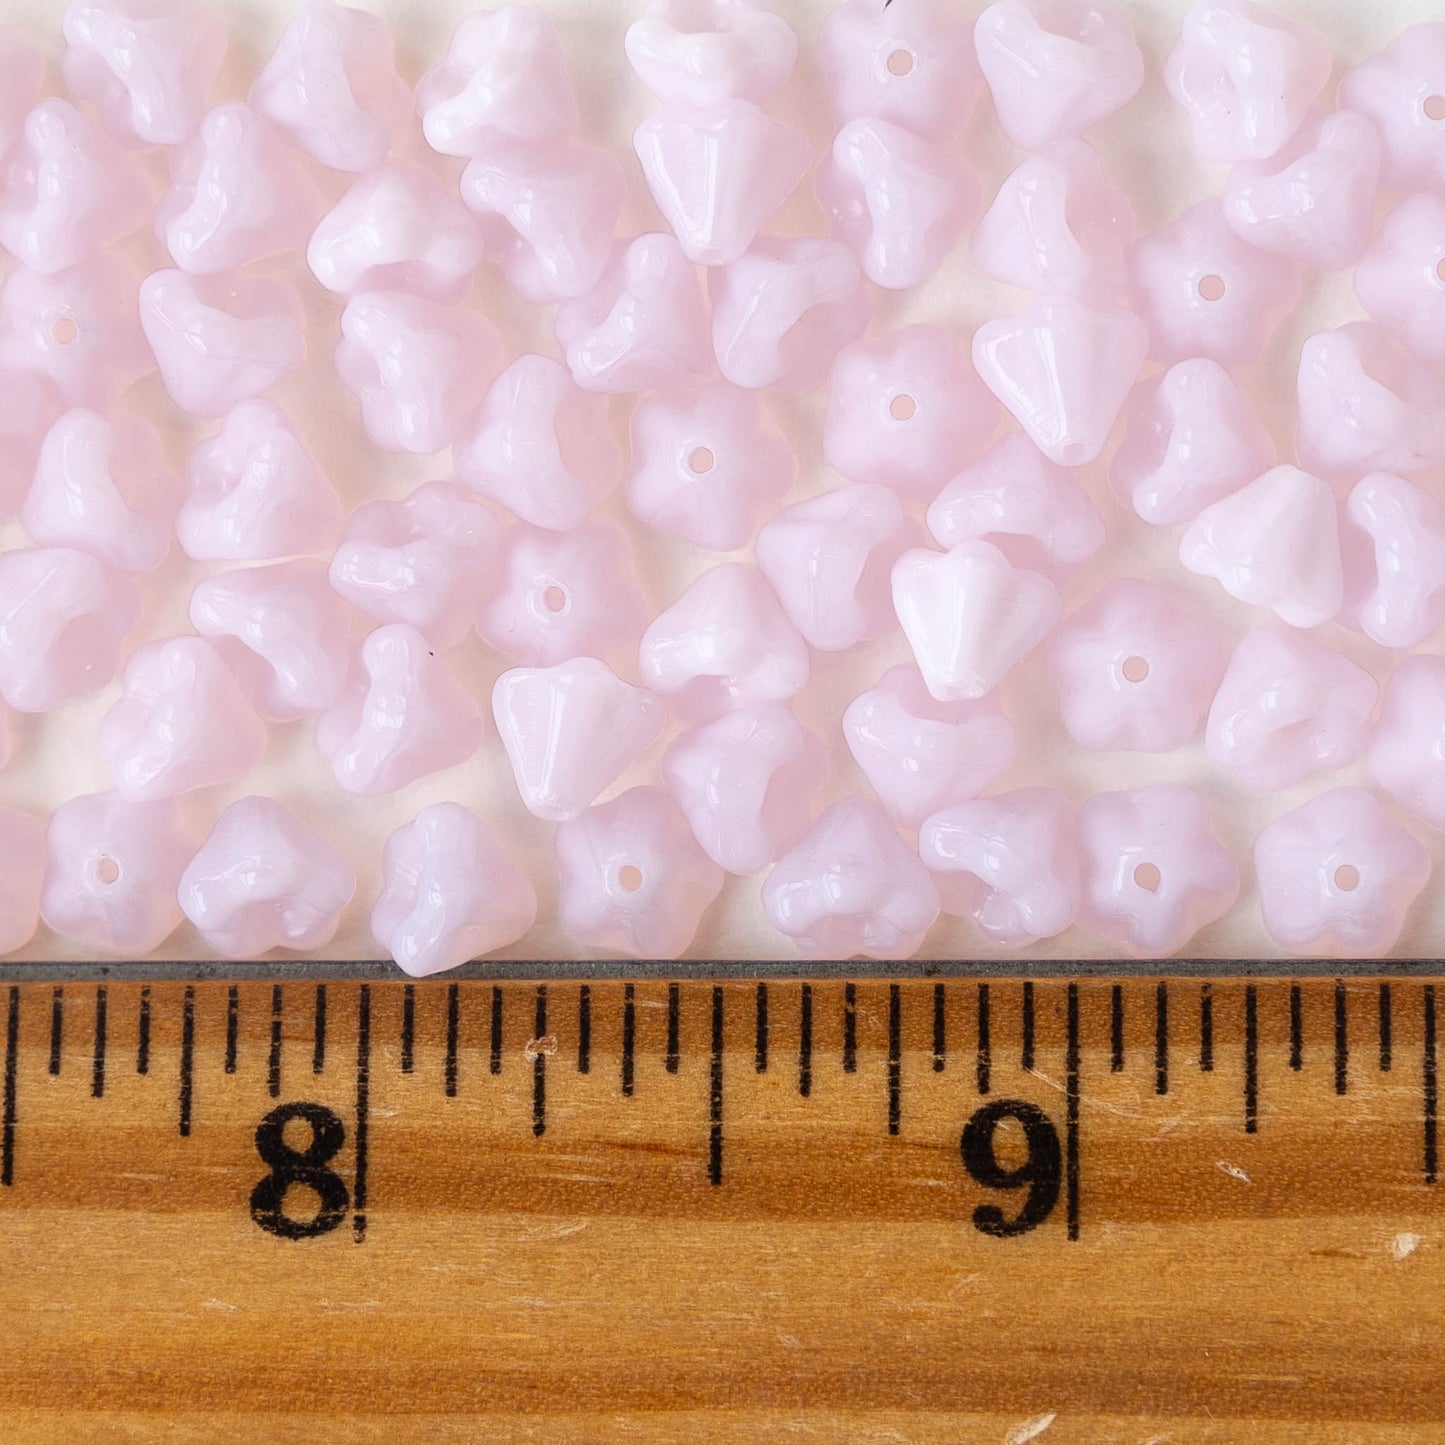 4x6mm Glass Flower Beads -  Lt. Pink Opaline - 50